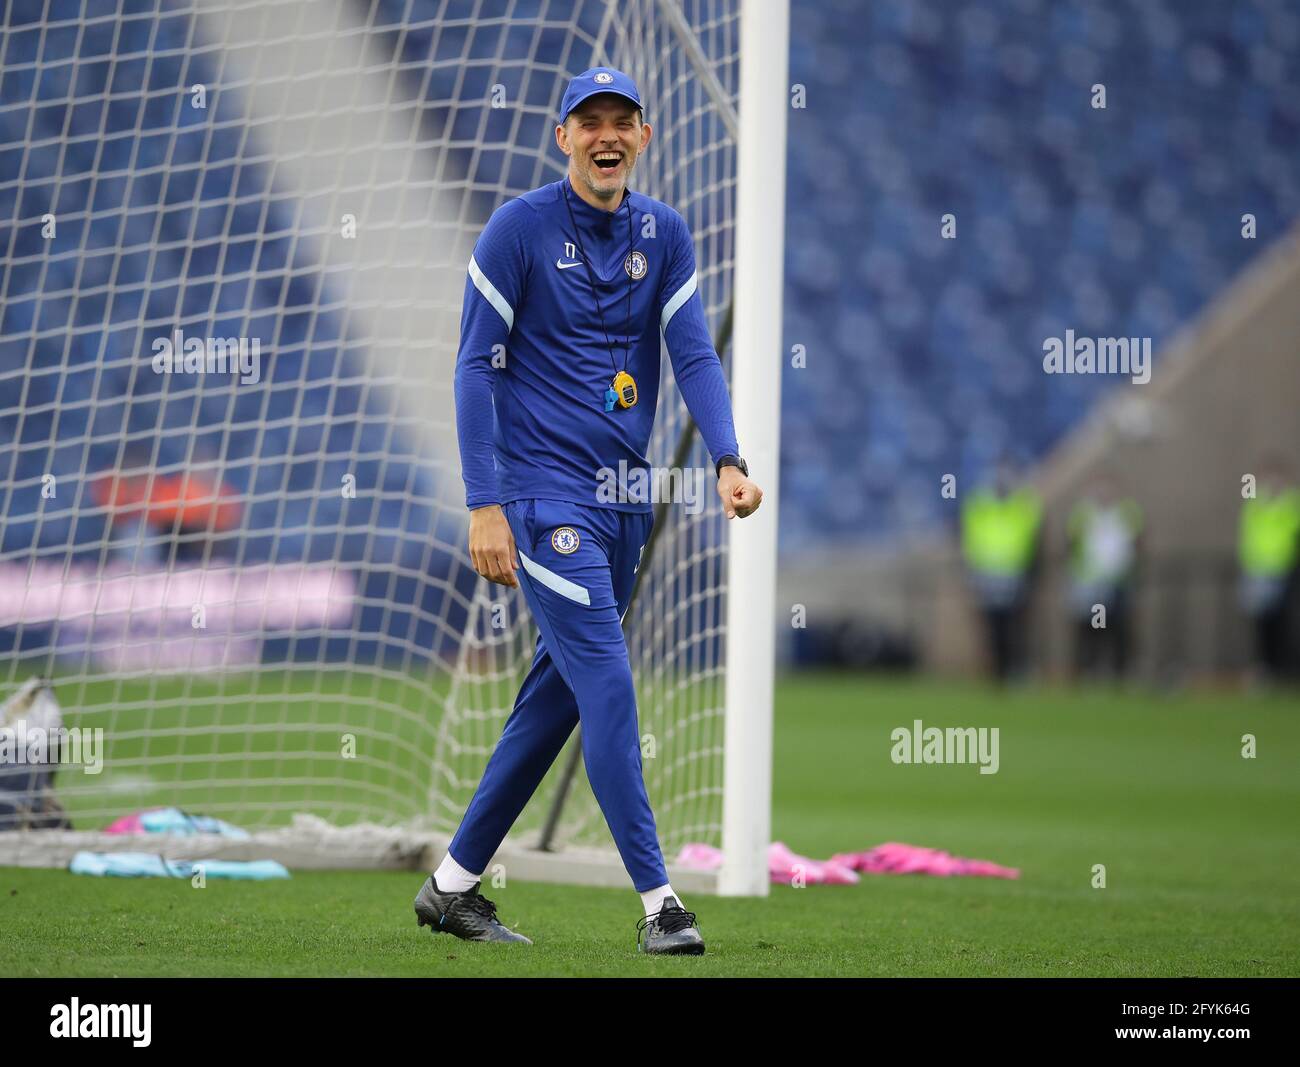 Porto, Portogallo, 28 maggio 2021. Thomas Tuchel manager di Chelsea durante una sessione di allenamento all'Estadio do Dragao di Porto. Il credito immagine dovrebbe essere: David Klein/Sportimage Credit: Sportimage/Alamy Live News Foto Stock